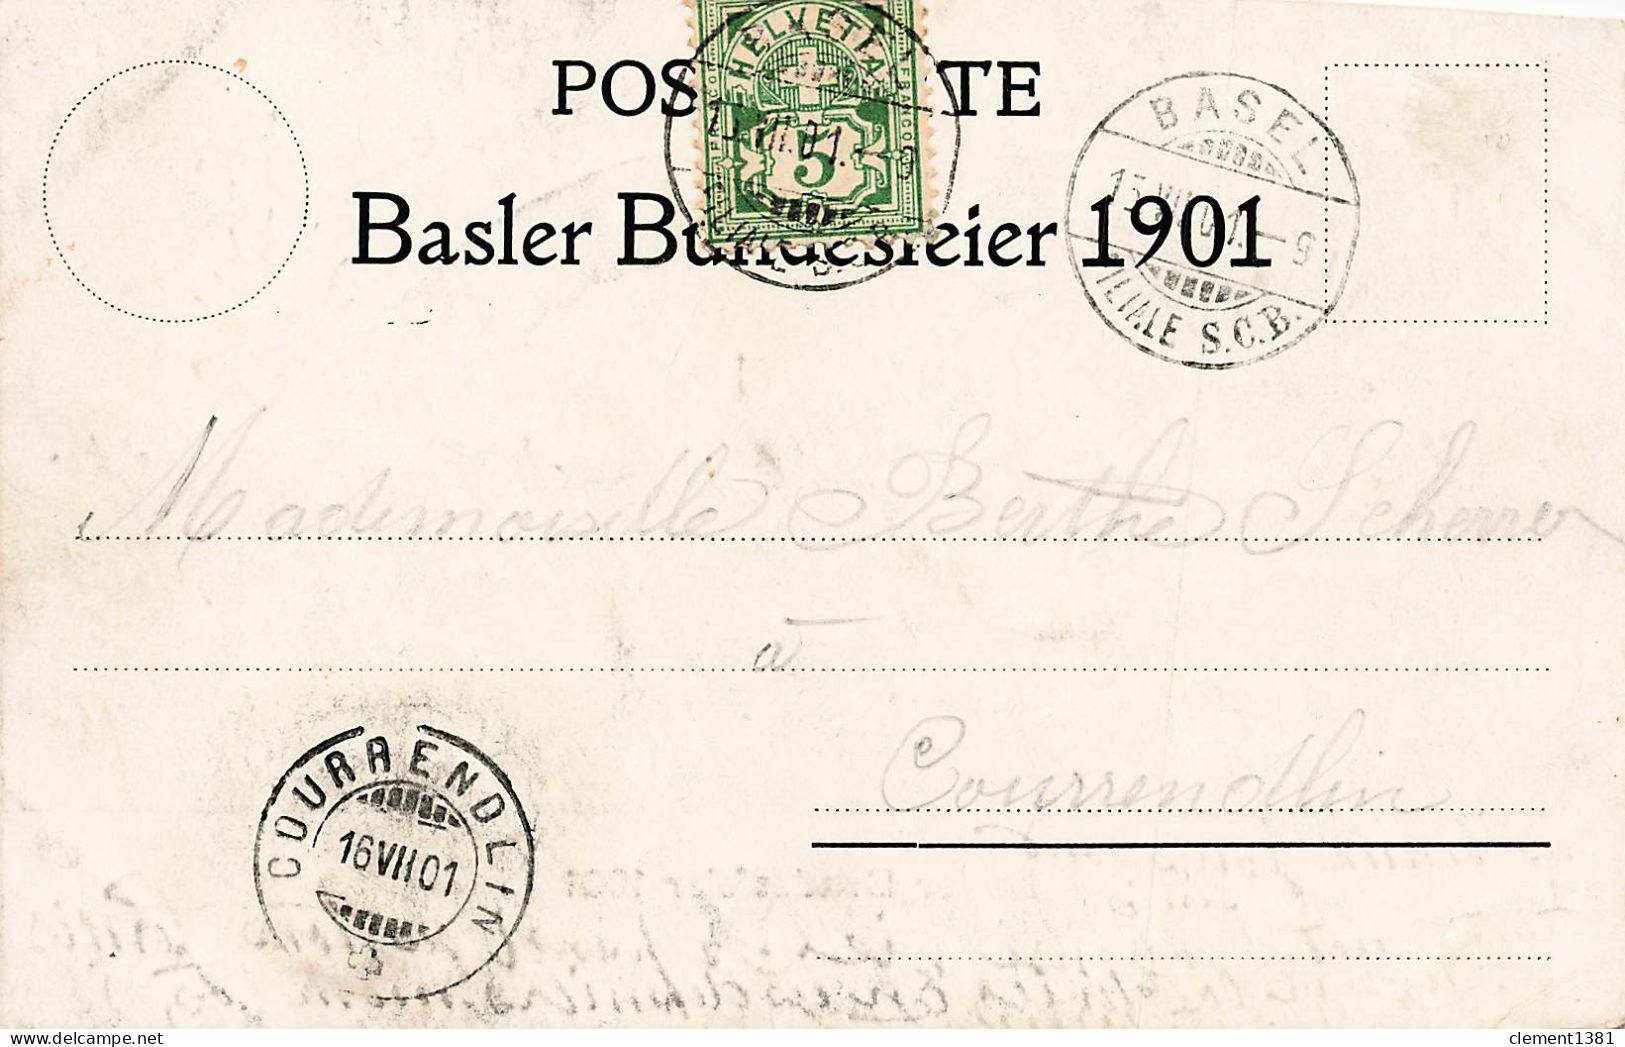 Basler Bundesfeier 1901 - Bazel